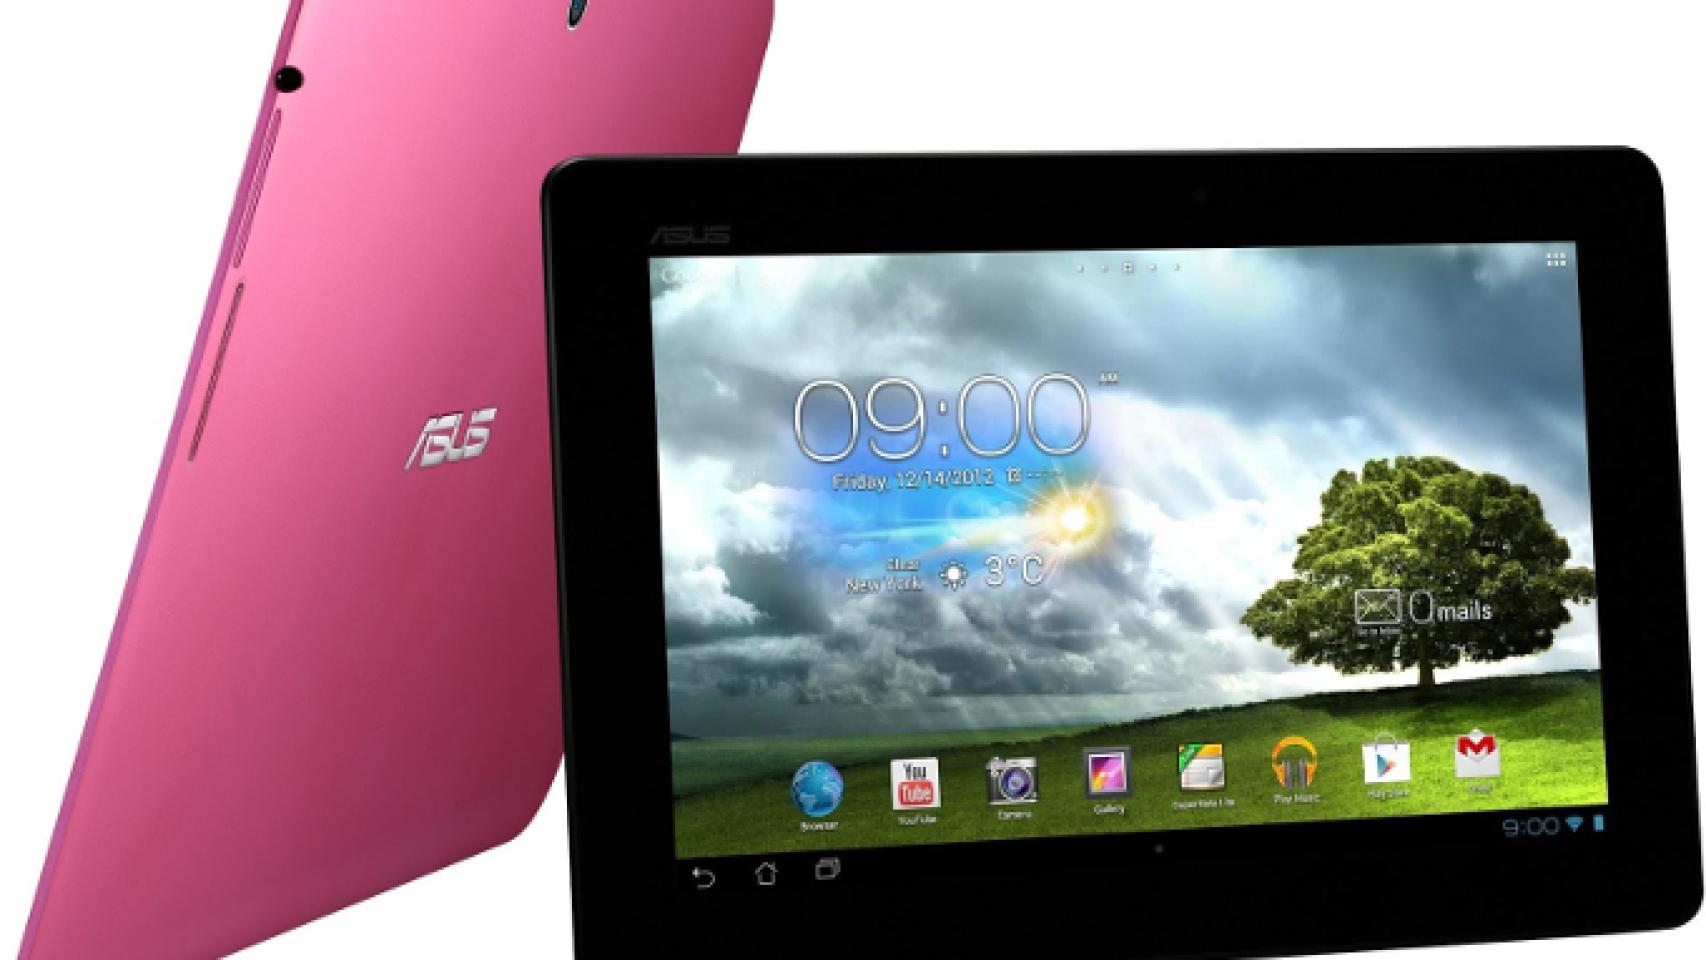 Asus presenta la MeMO Pad Smart, una tablet de 10 pulgadas por menos de 330€